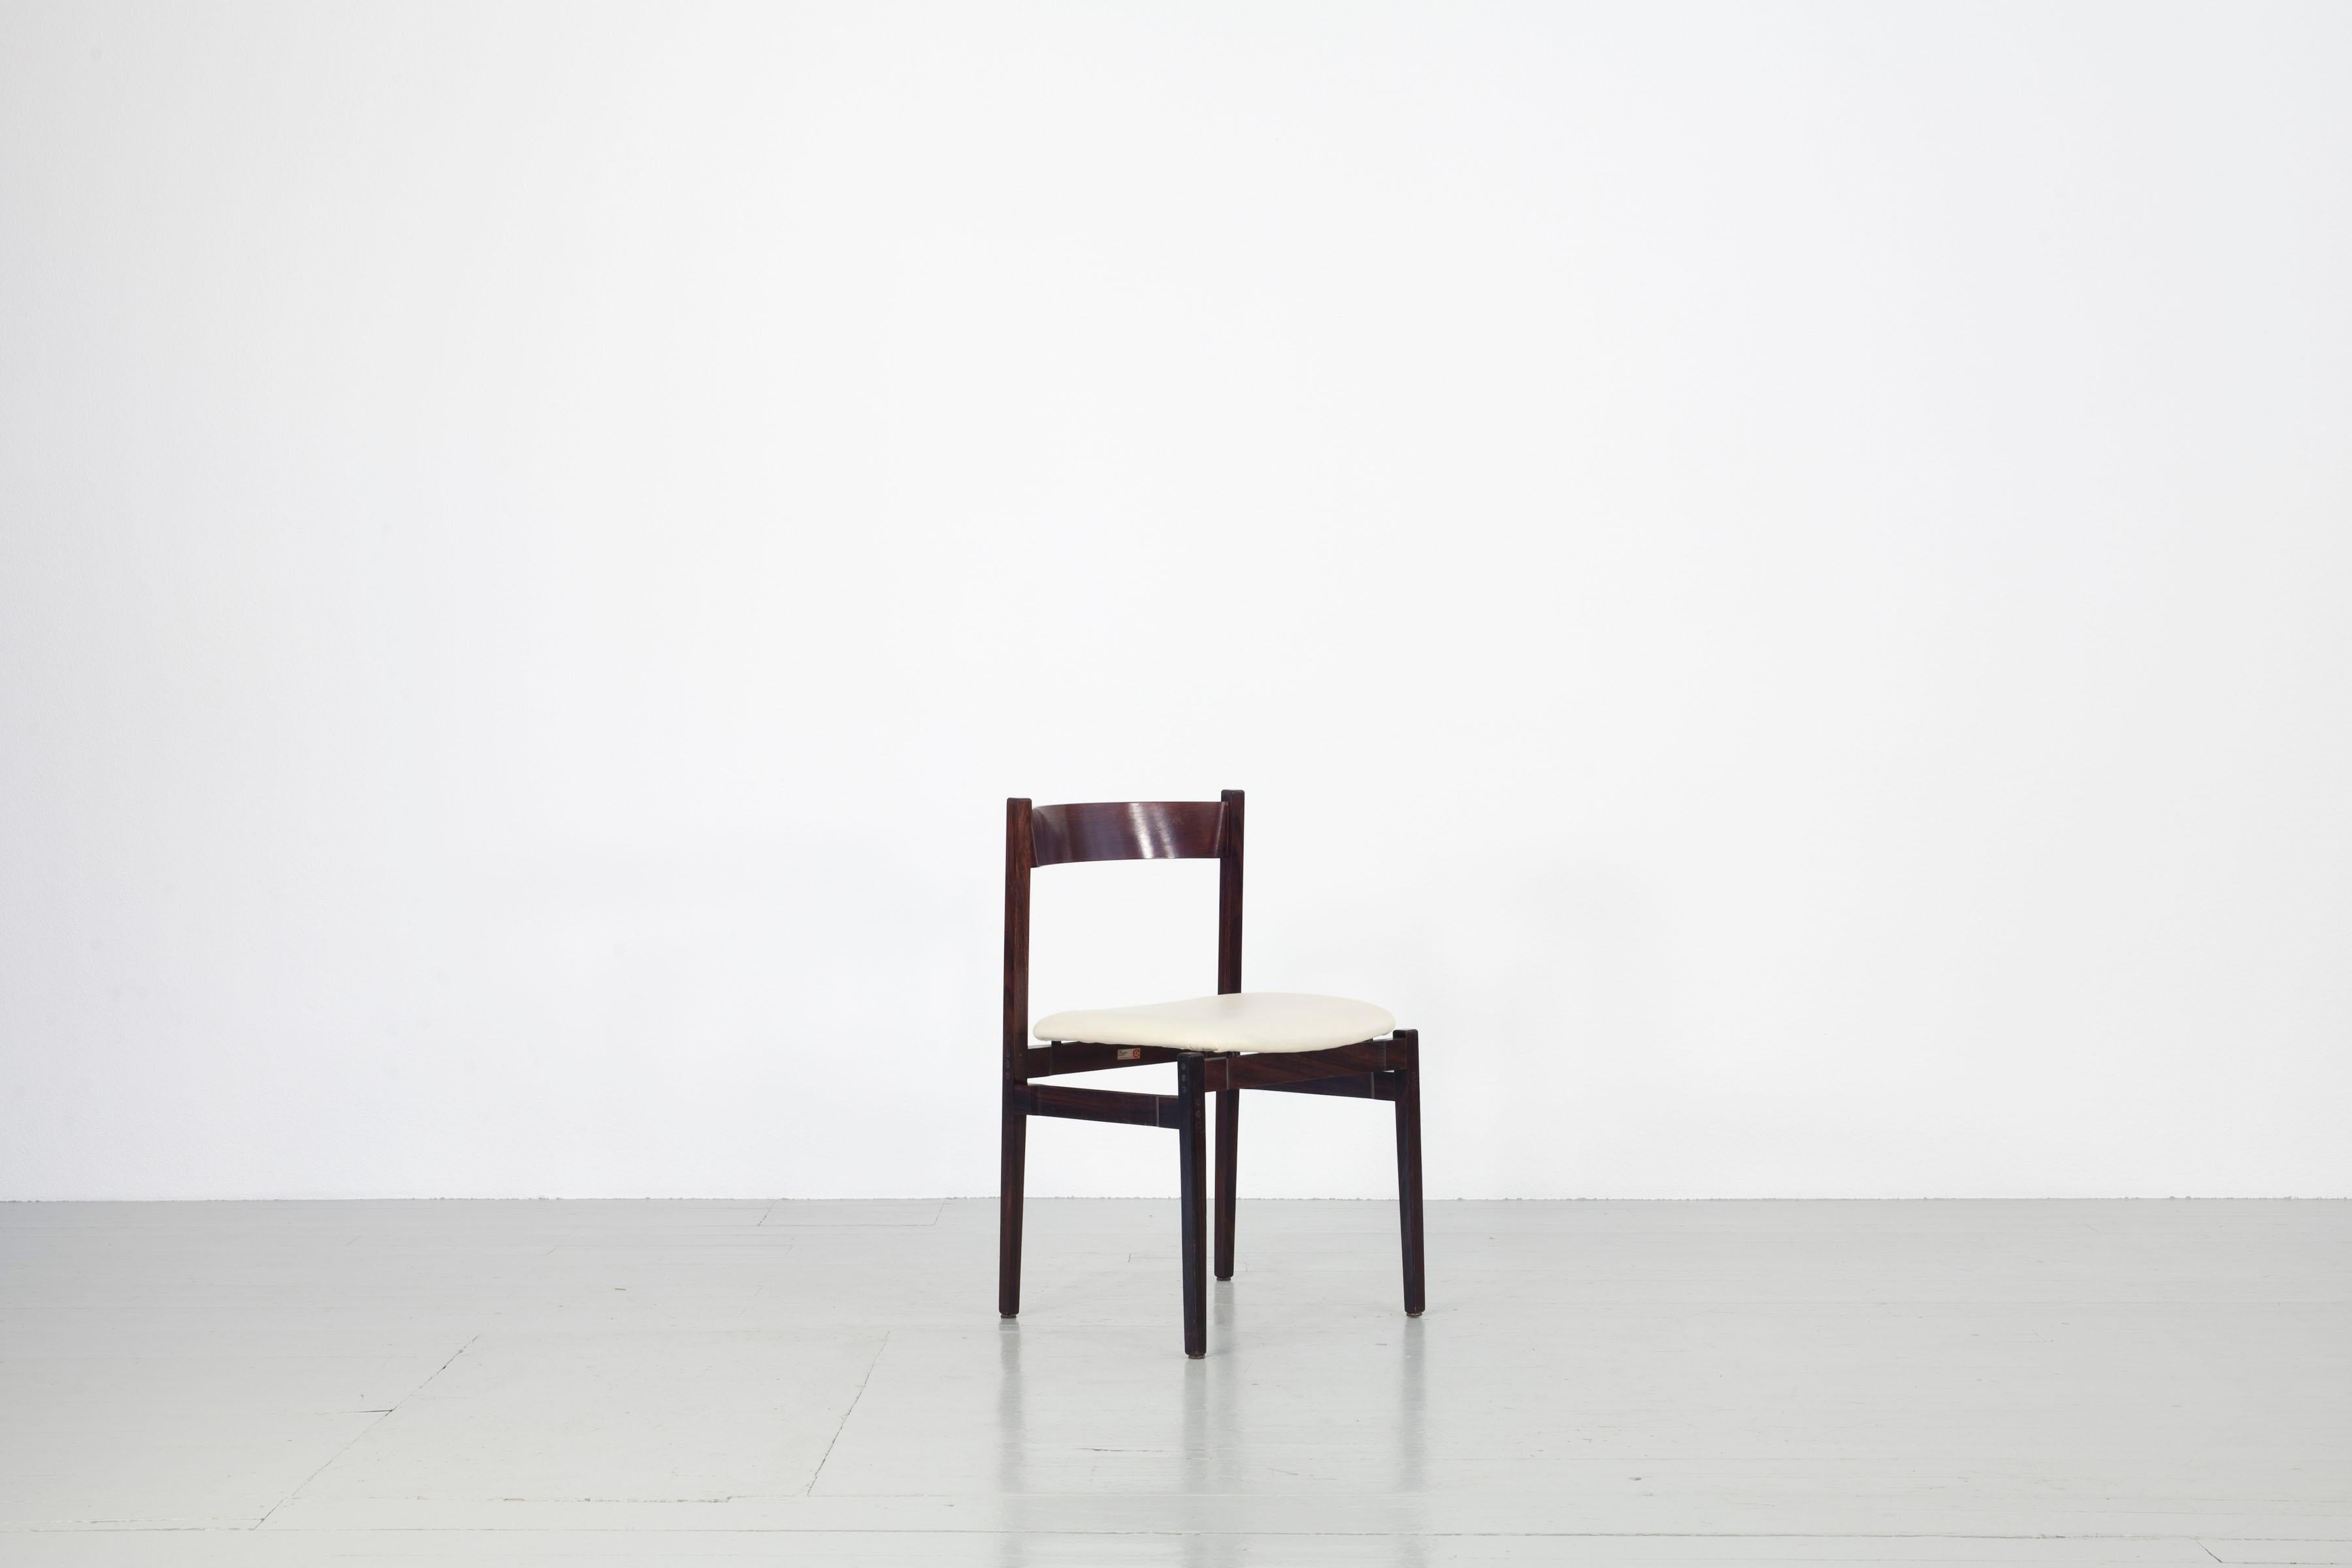 Cet ensemble de quatre chaises a été conçu par Guiseppe Gibelli pour Fratelli Maspero et fabriqué par Sormani en Italie, Mariano Comense dans les années 1960. Le modèle 